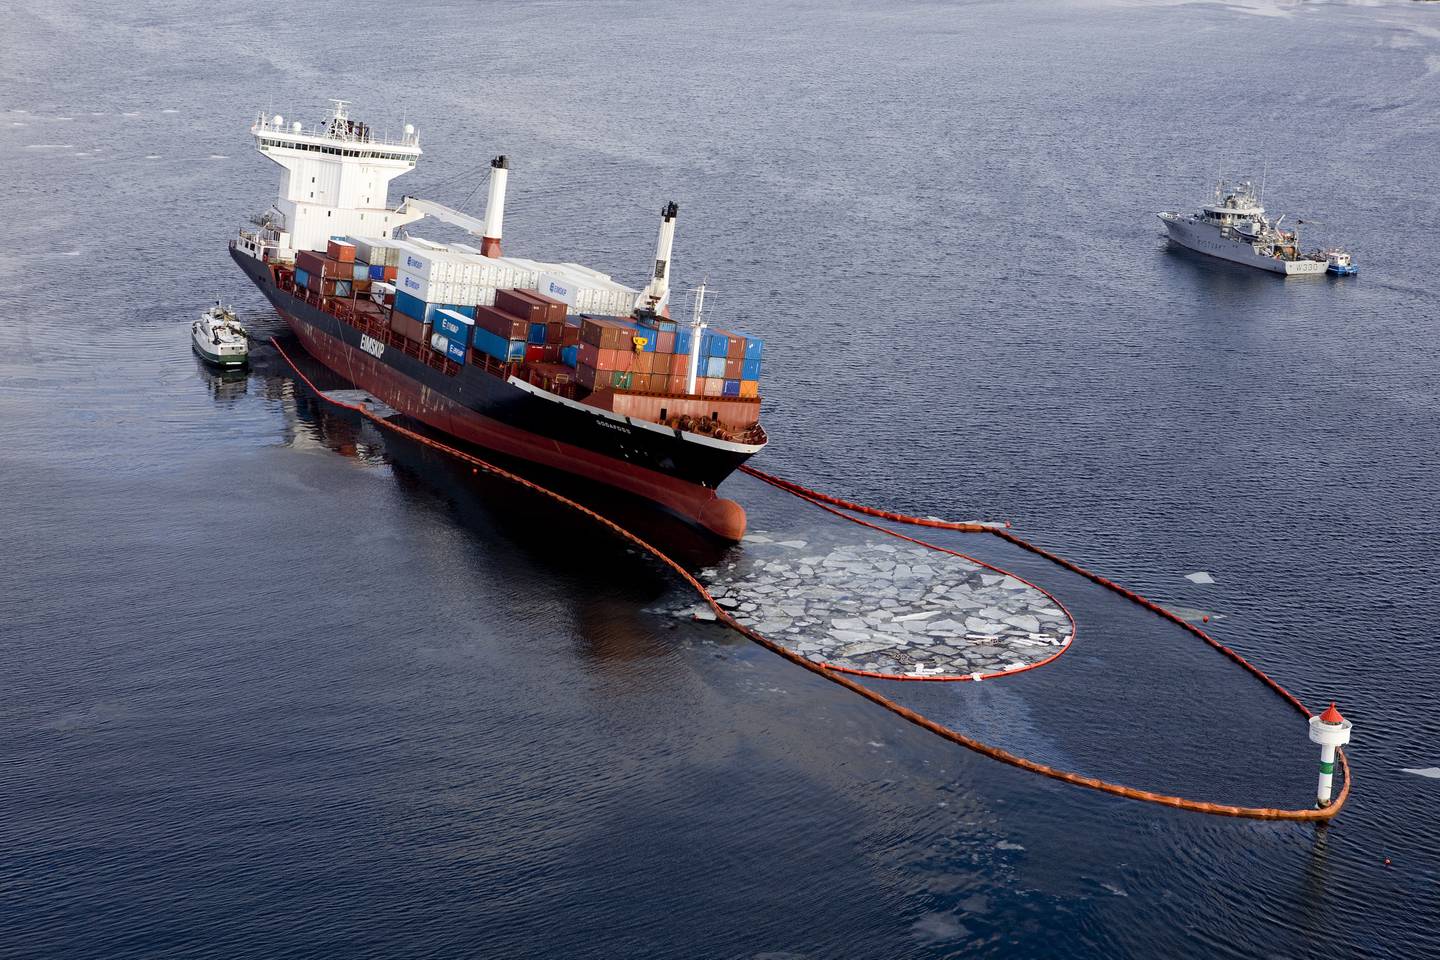 Oljelensene som ble lagt ut etter at lasteskipet Godafoss gikk på grunn i 2011, klarte ikke å forhindre at om lag 1.500 sjøfugler døde.